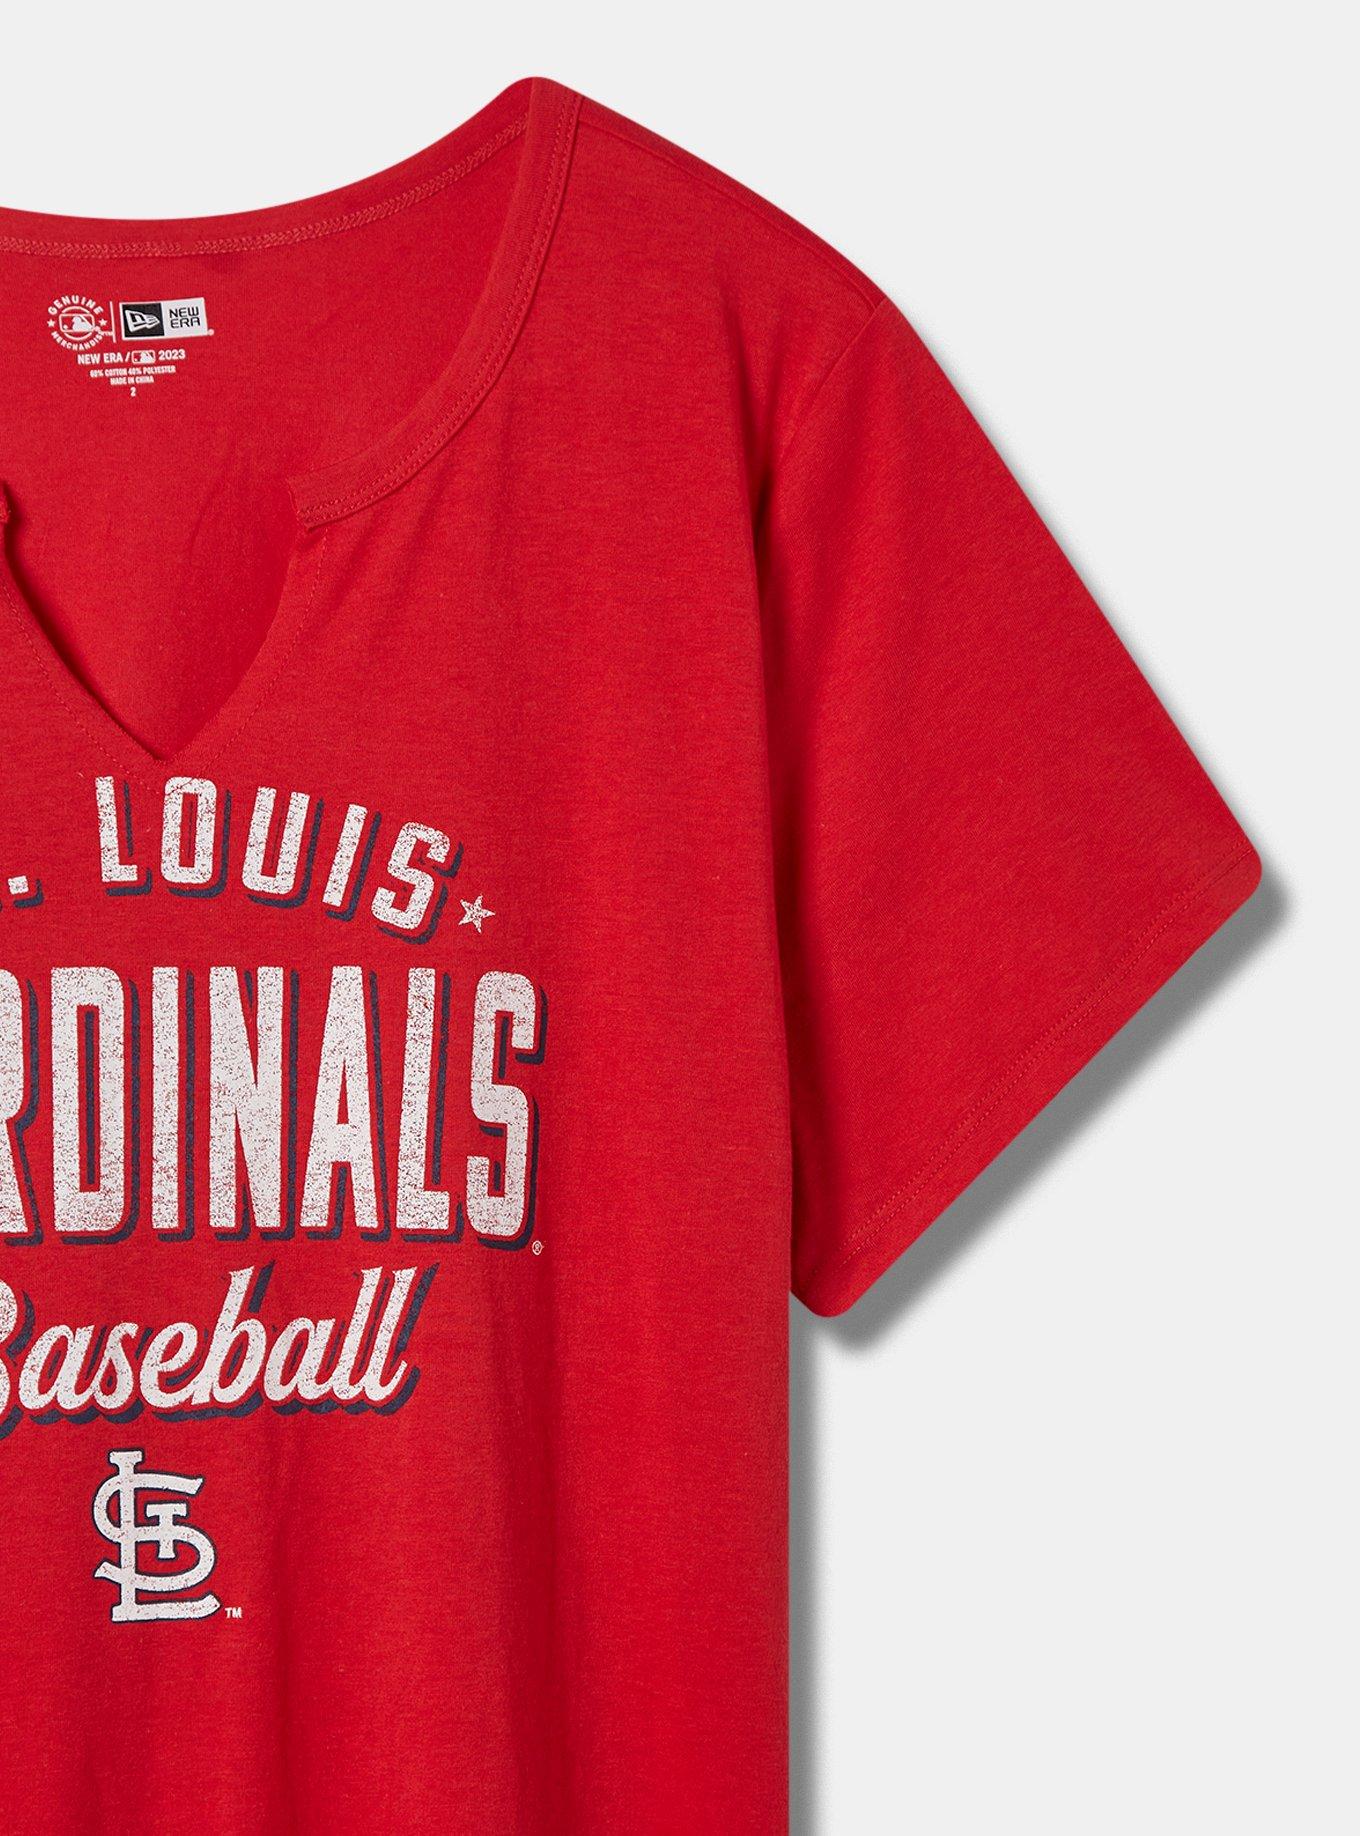 Plus Size - MLB St Louis Cardinals Classic Fit Cotton Notch Tee - Torrid